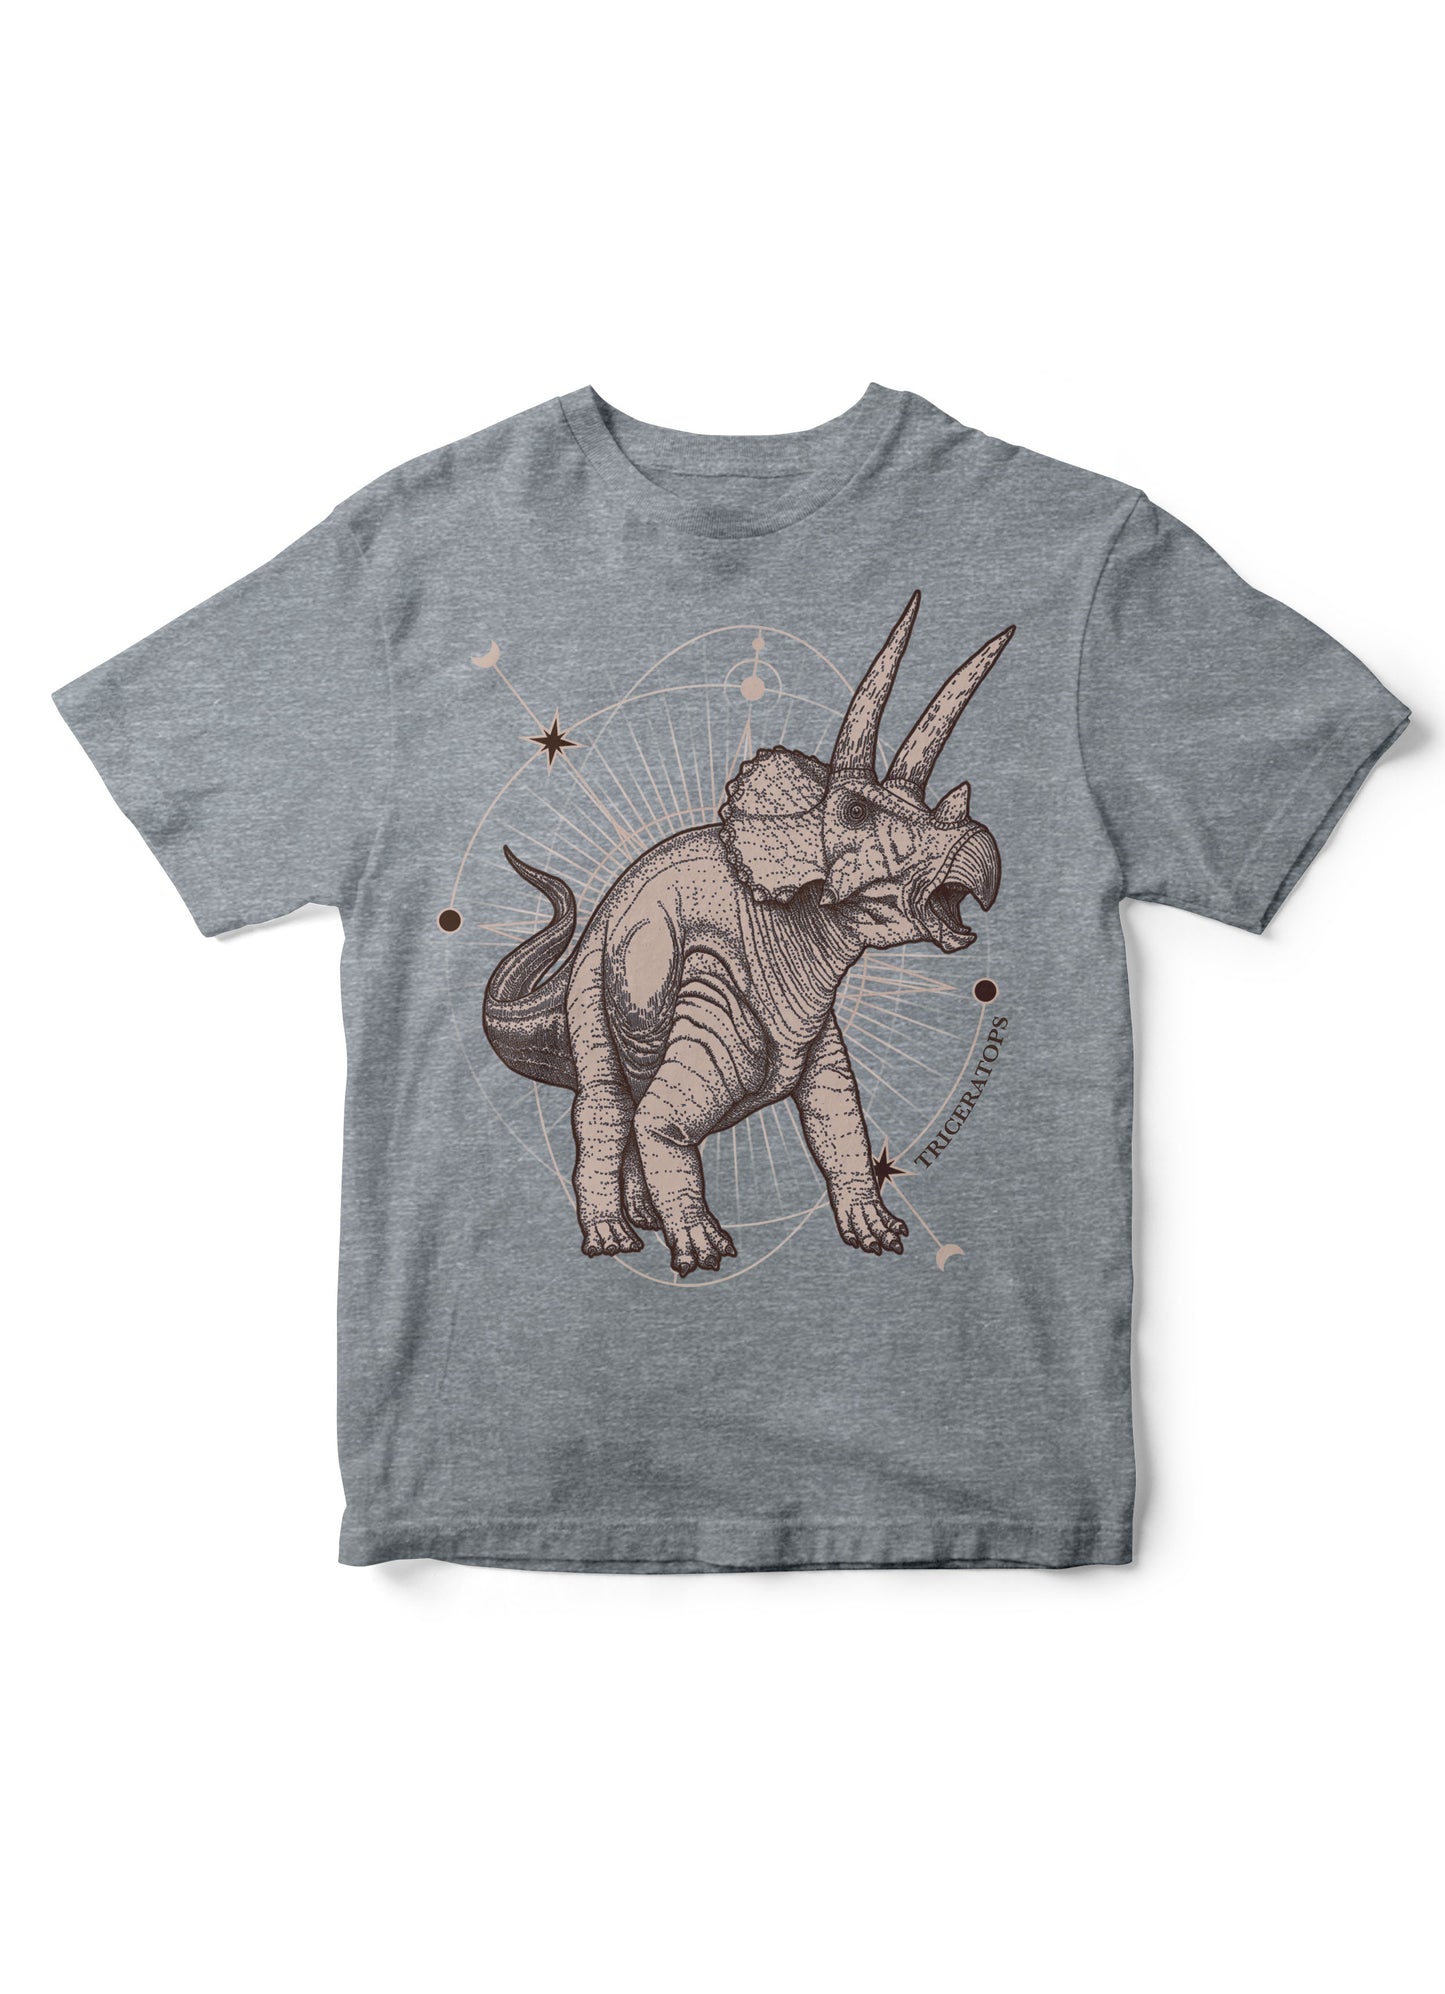 dinosaur shirt, dino t-shirt, kid tshirt, dinosaur kid tee